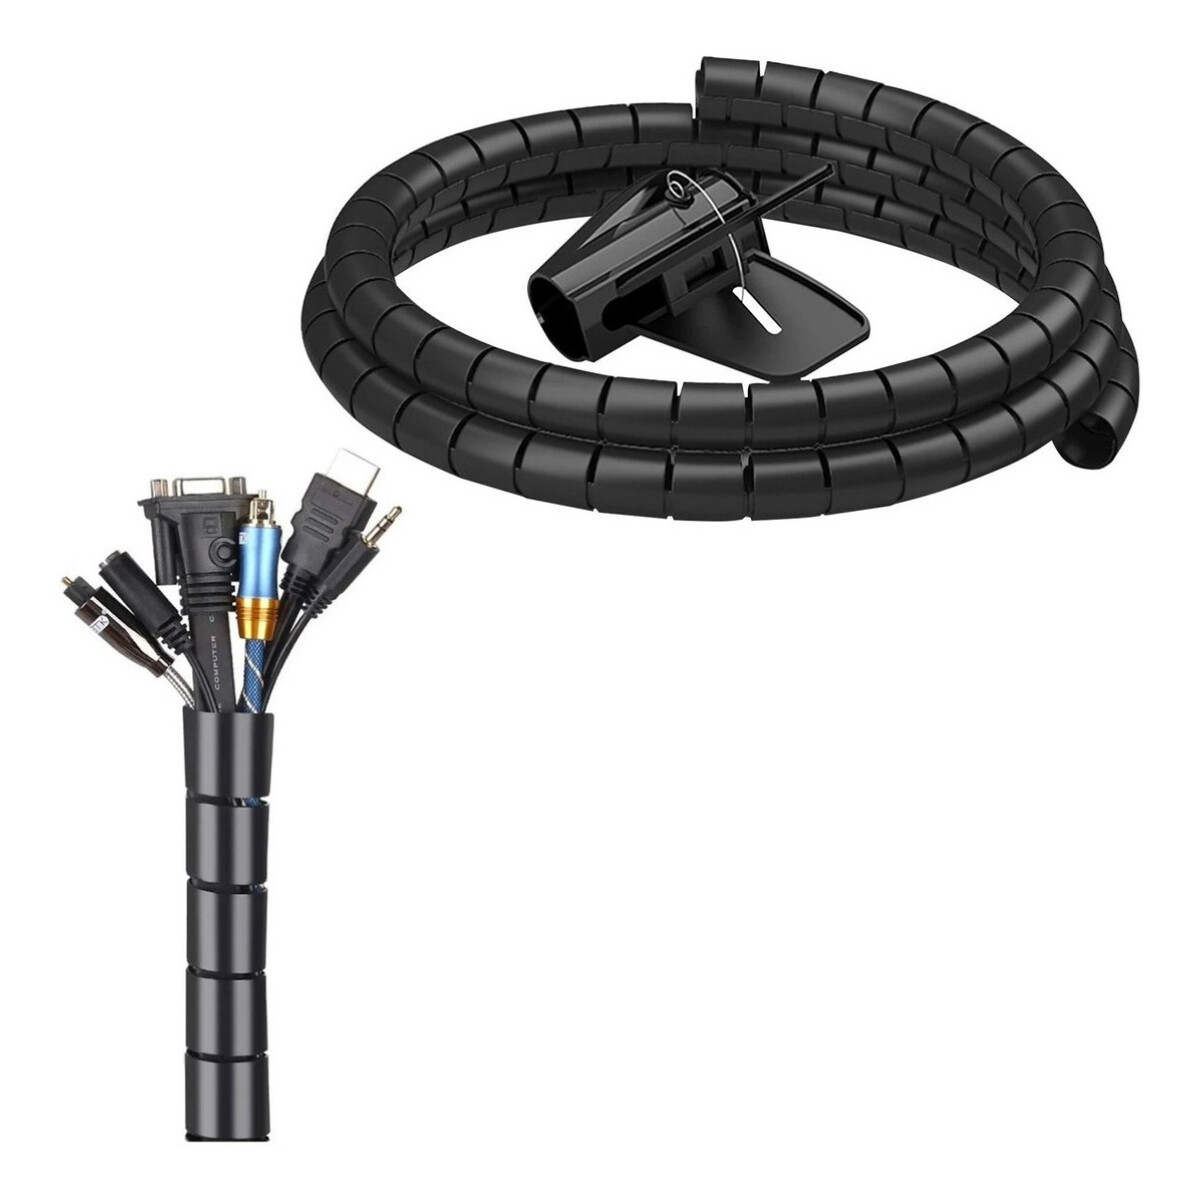 Organizador Cables Escritorio Auto Cierre Recoge Cables Cubre Cables a5958